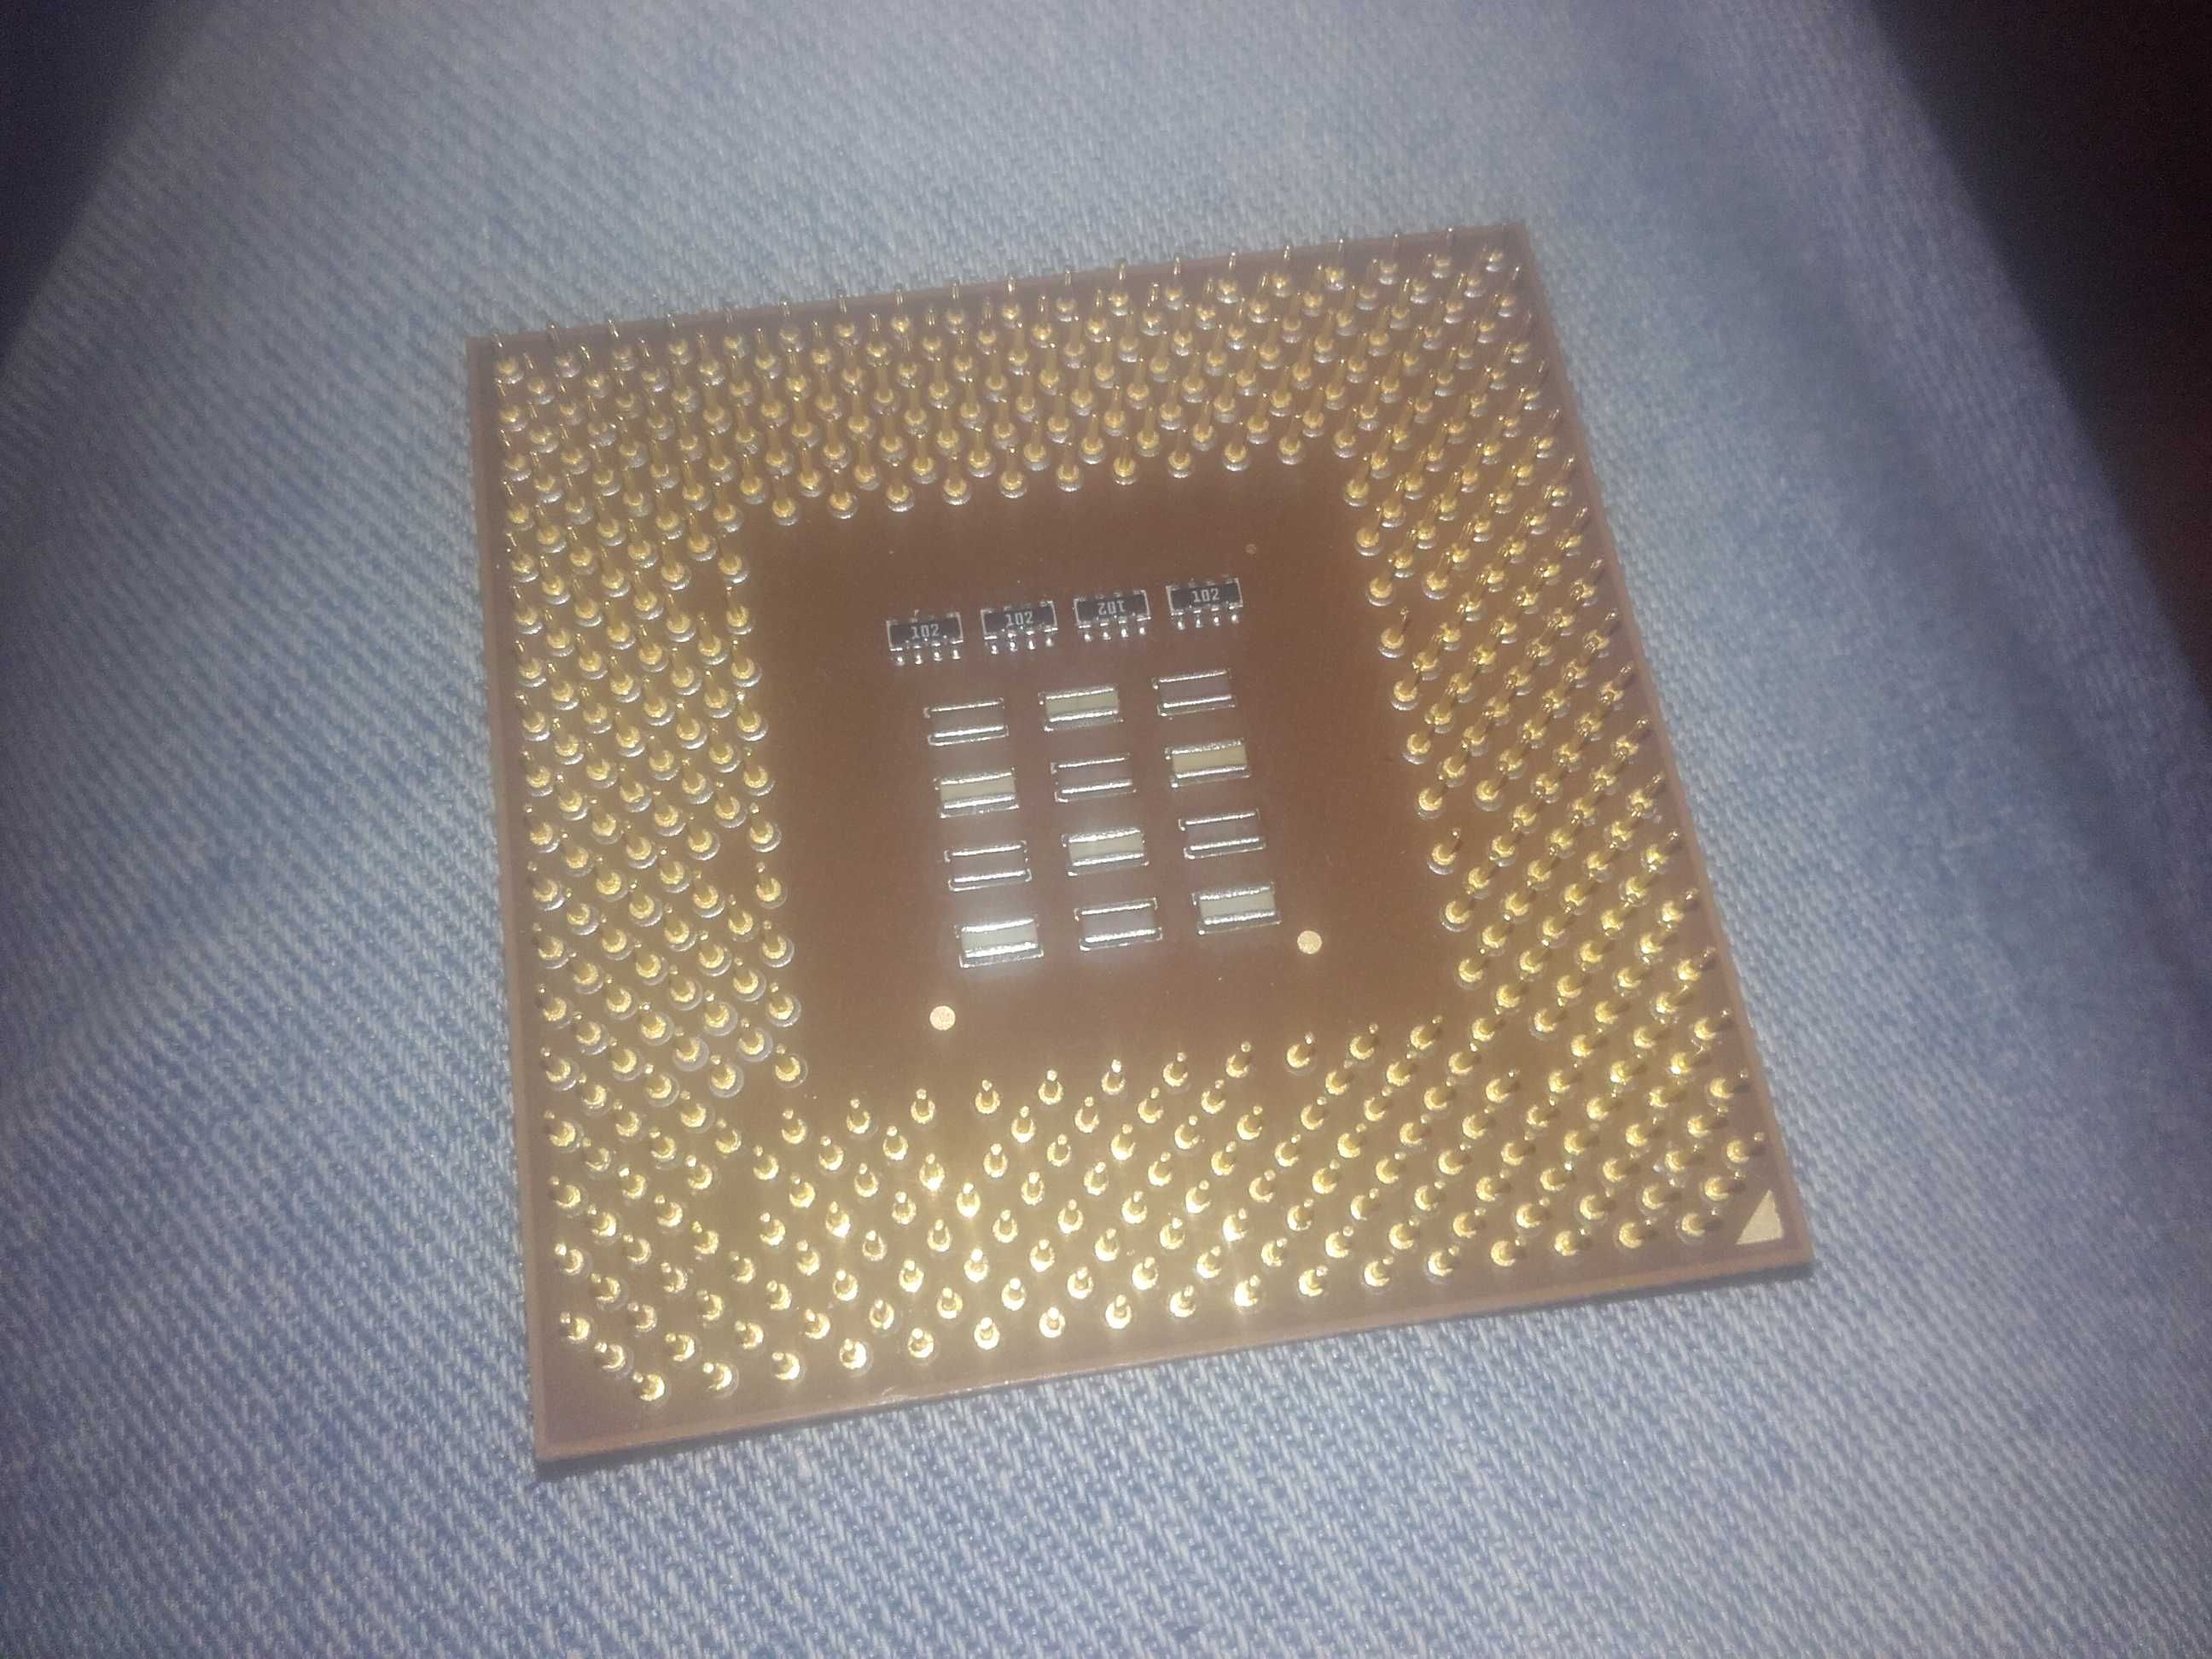 Procesor ceramic 1.6Ghz AMD Athlon (AX1600DMT3C) socket A 462